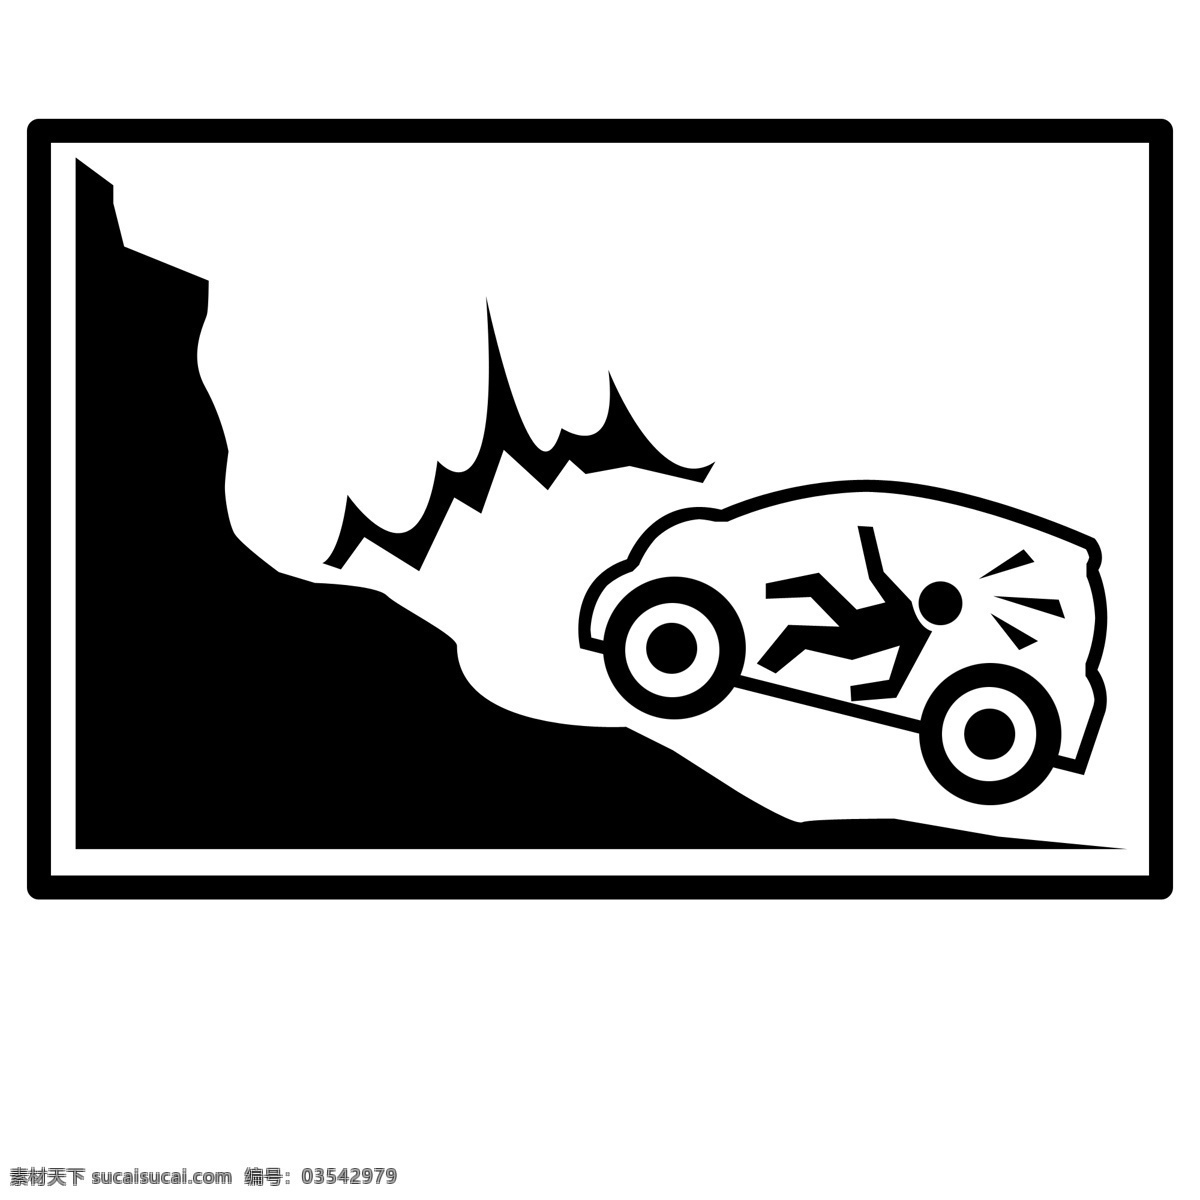 交通 注意 陡崖 小 图标 注意陡崖 小图标 黑色 撞车 汽车 机动车 车祸 危险 警示标识 交通指示牌